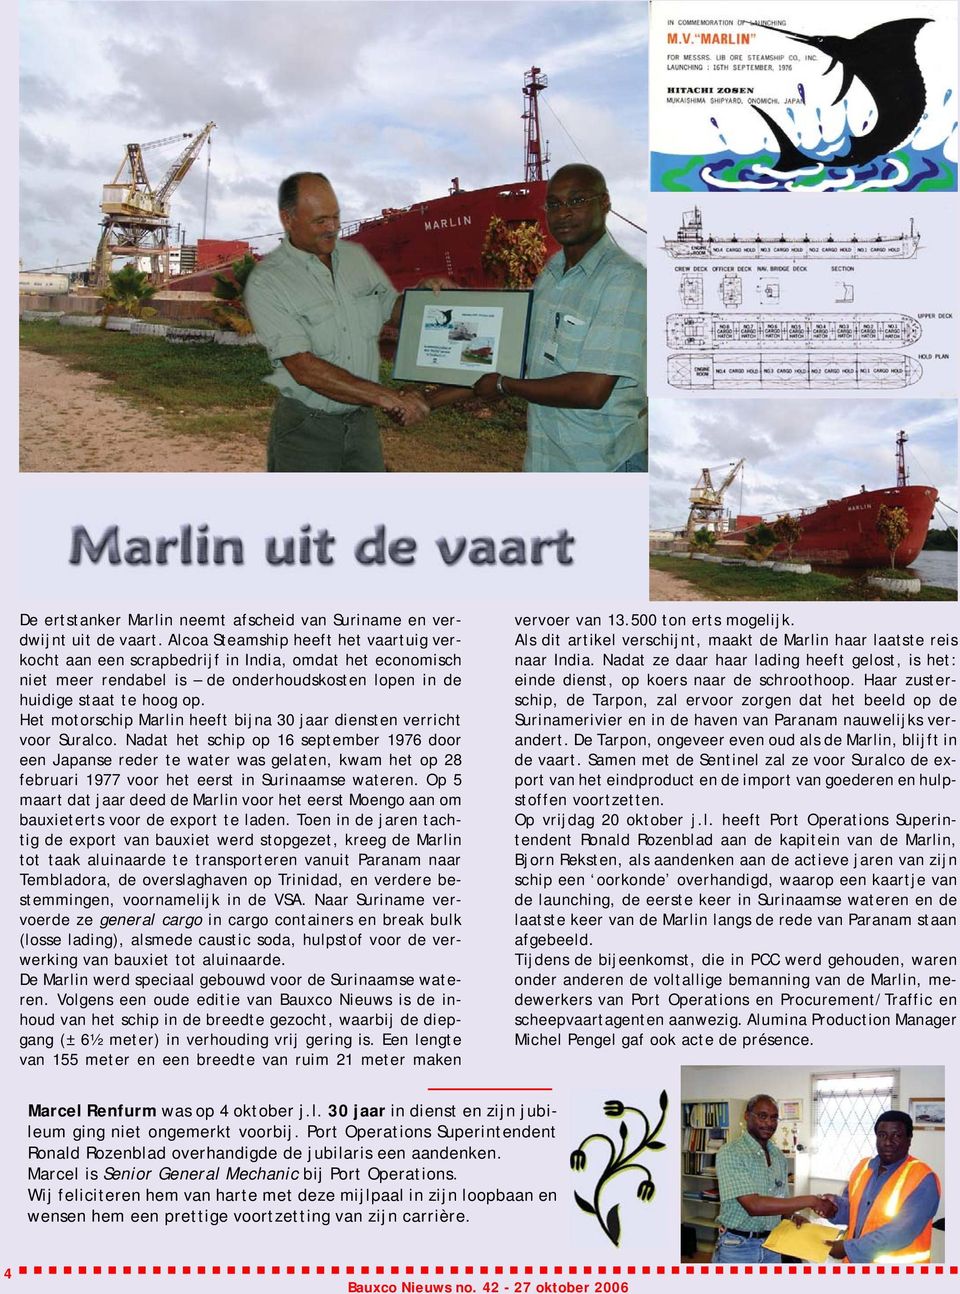 Het motorschip Marlin heeft bijna 30 jaar diensten verricht voor Suralco.